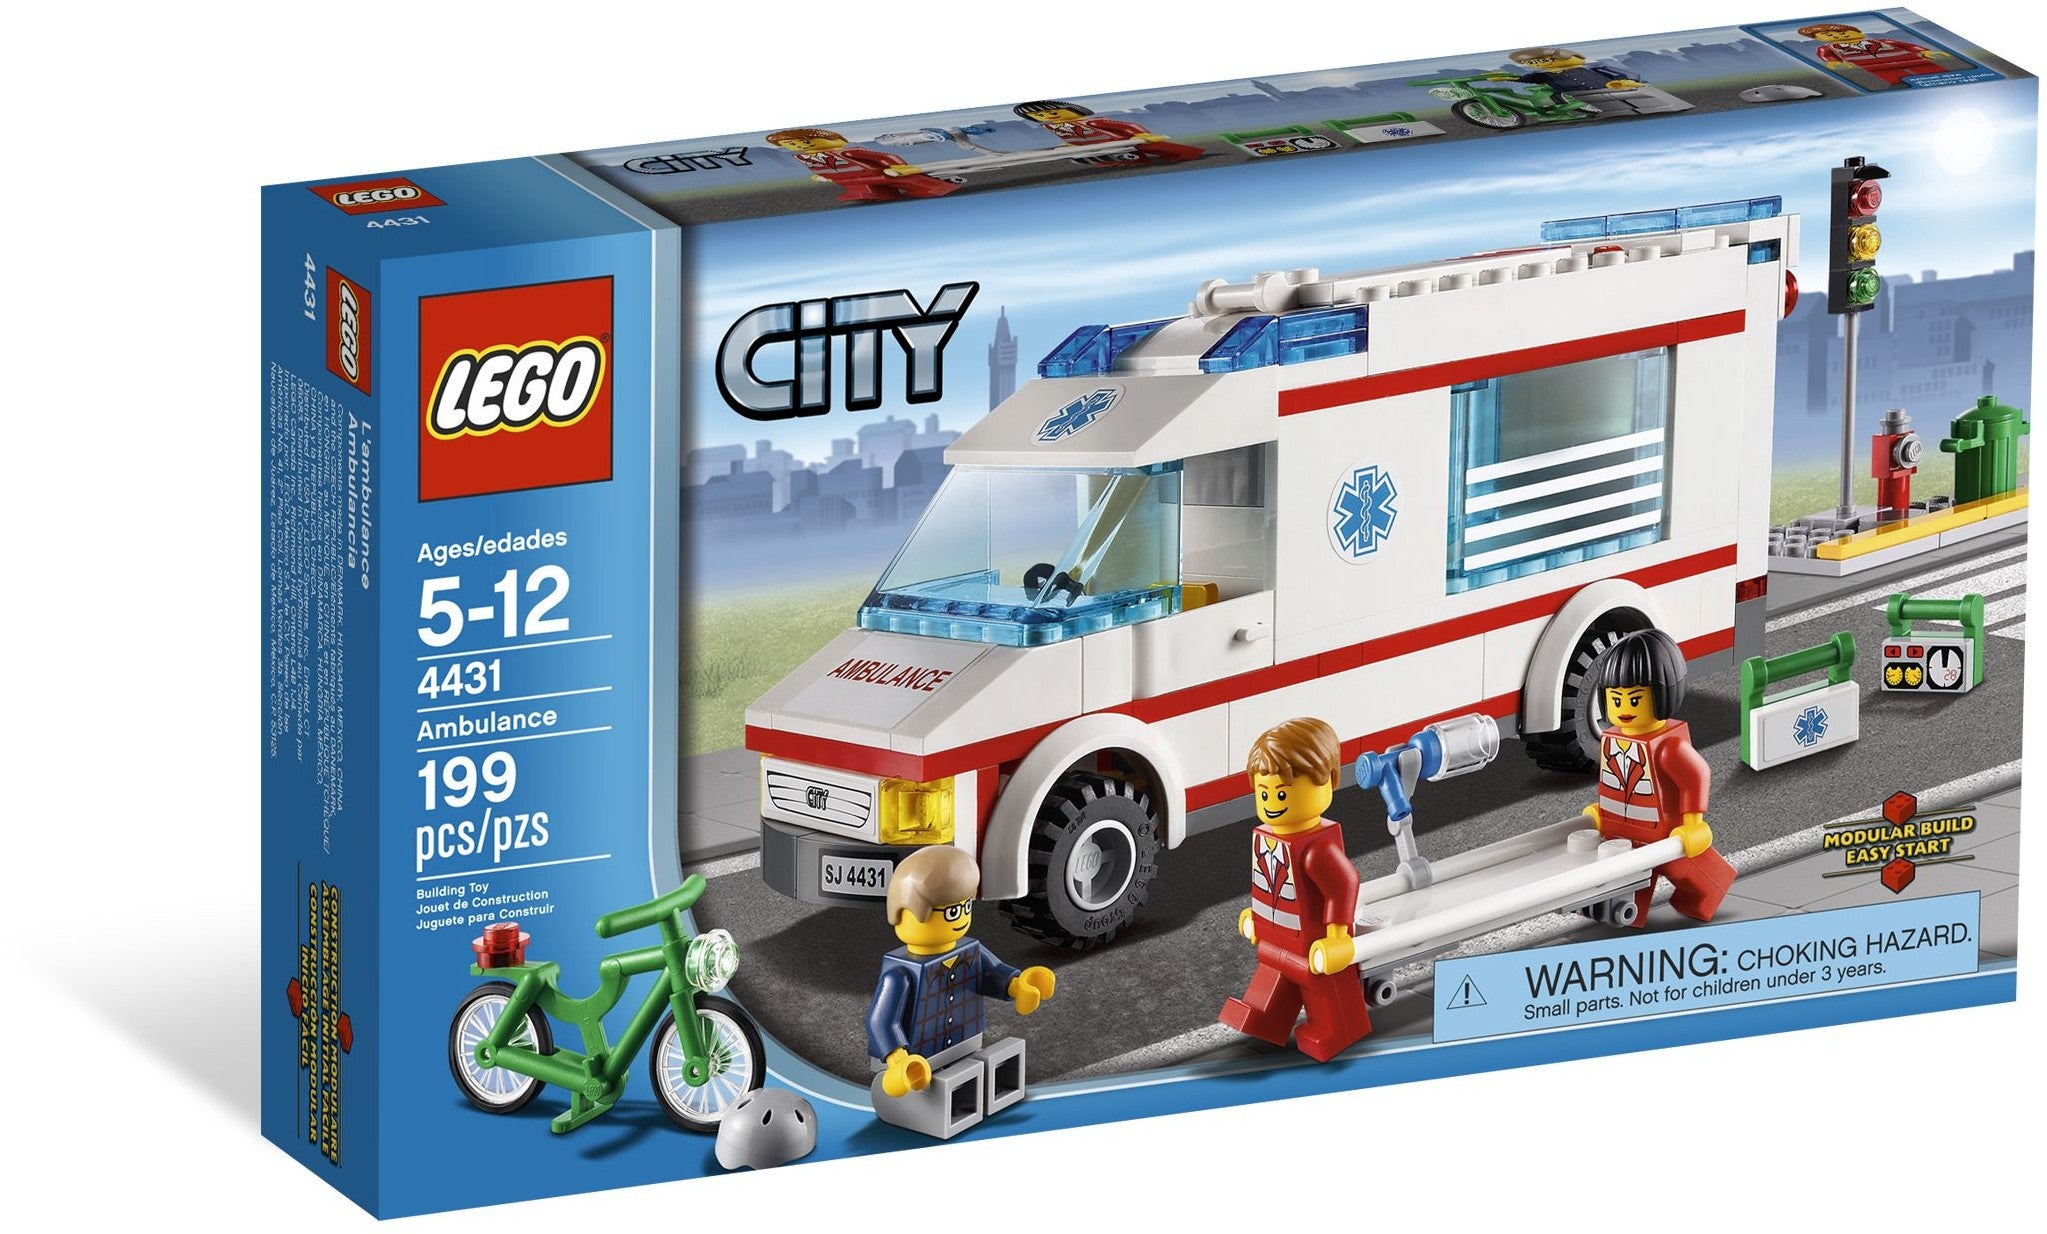 Lego City 4431 - Ambulance